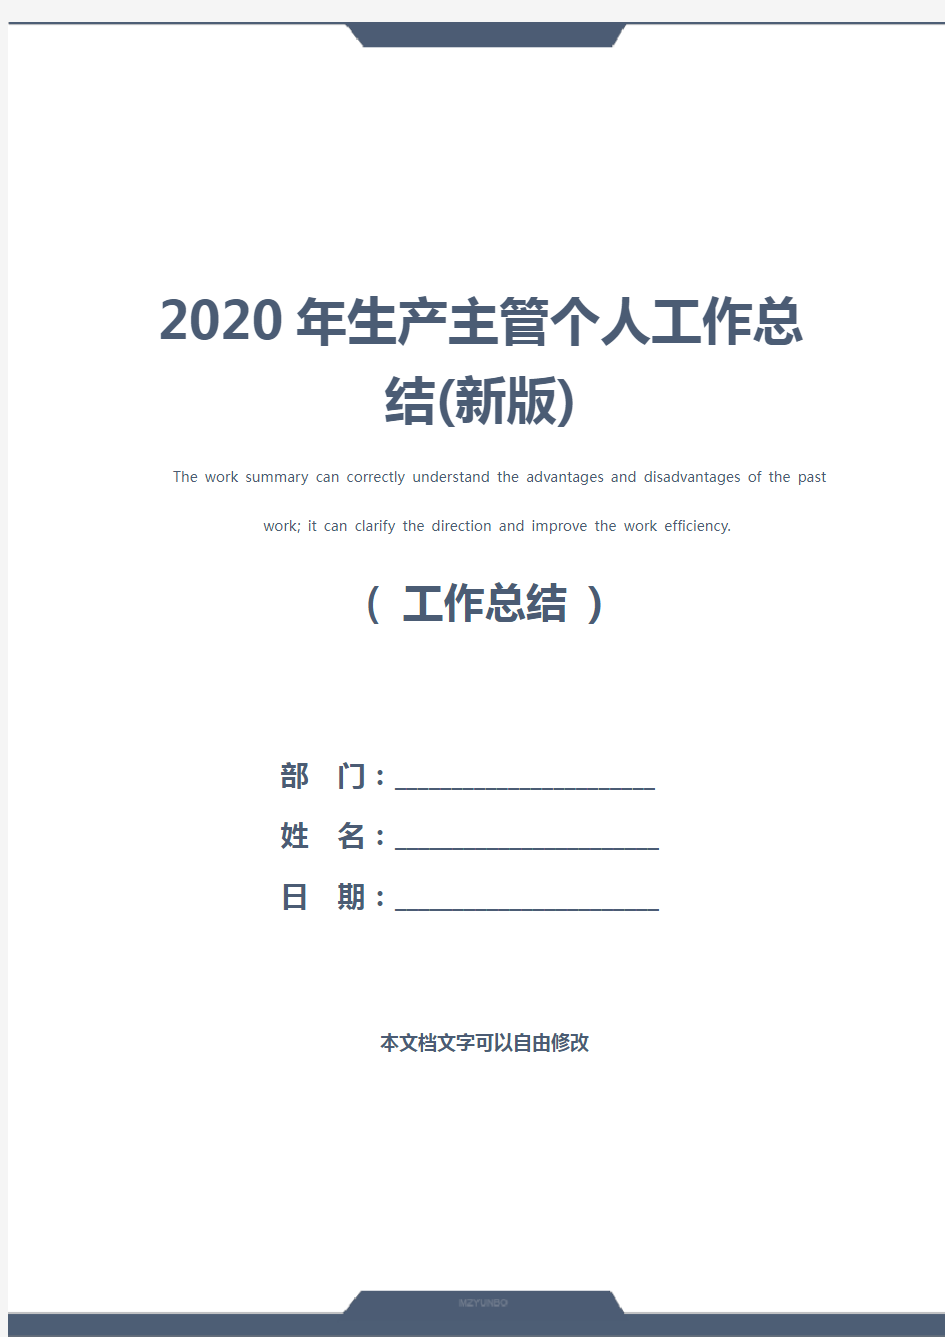 2020年生产主管个人工作总结(新版)